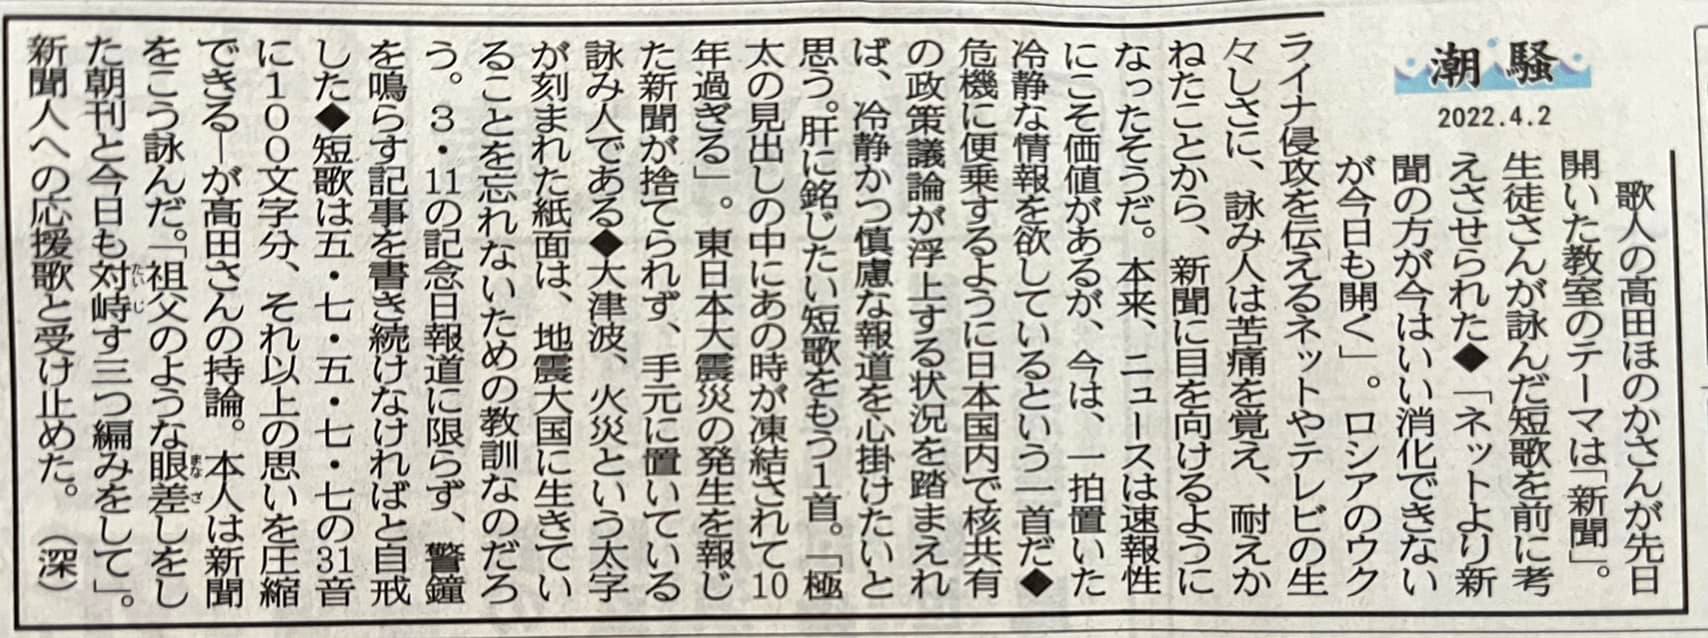 大阪日日新聞のコラムに、短歌教室ひつじ 生徒さんの短歌が掲載